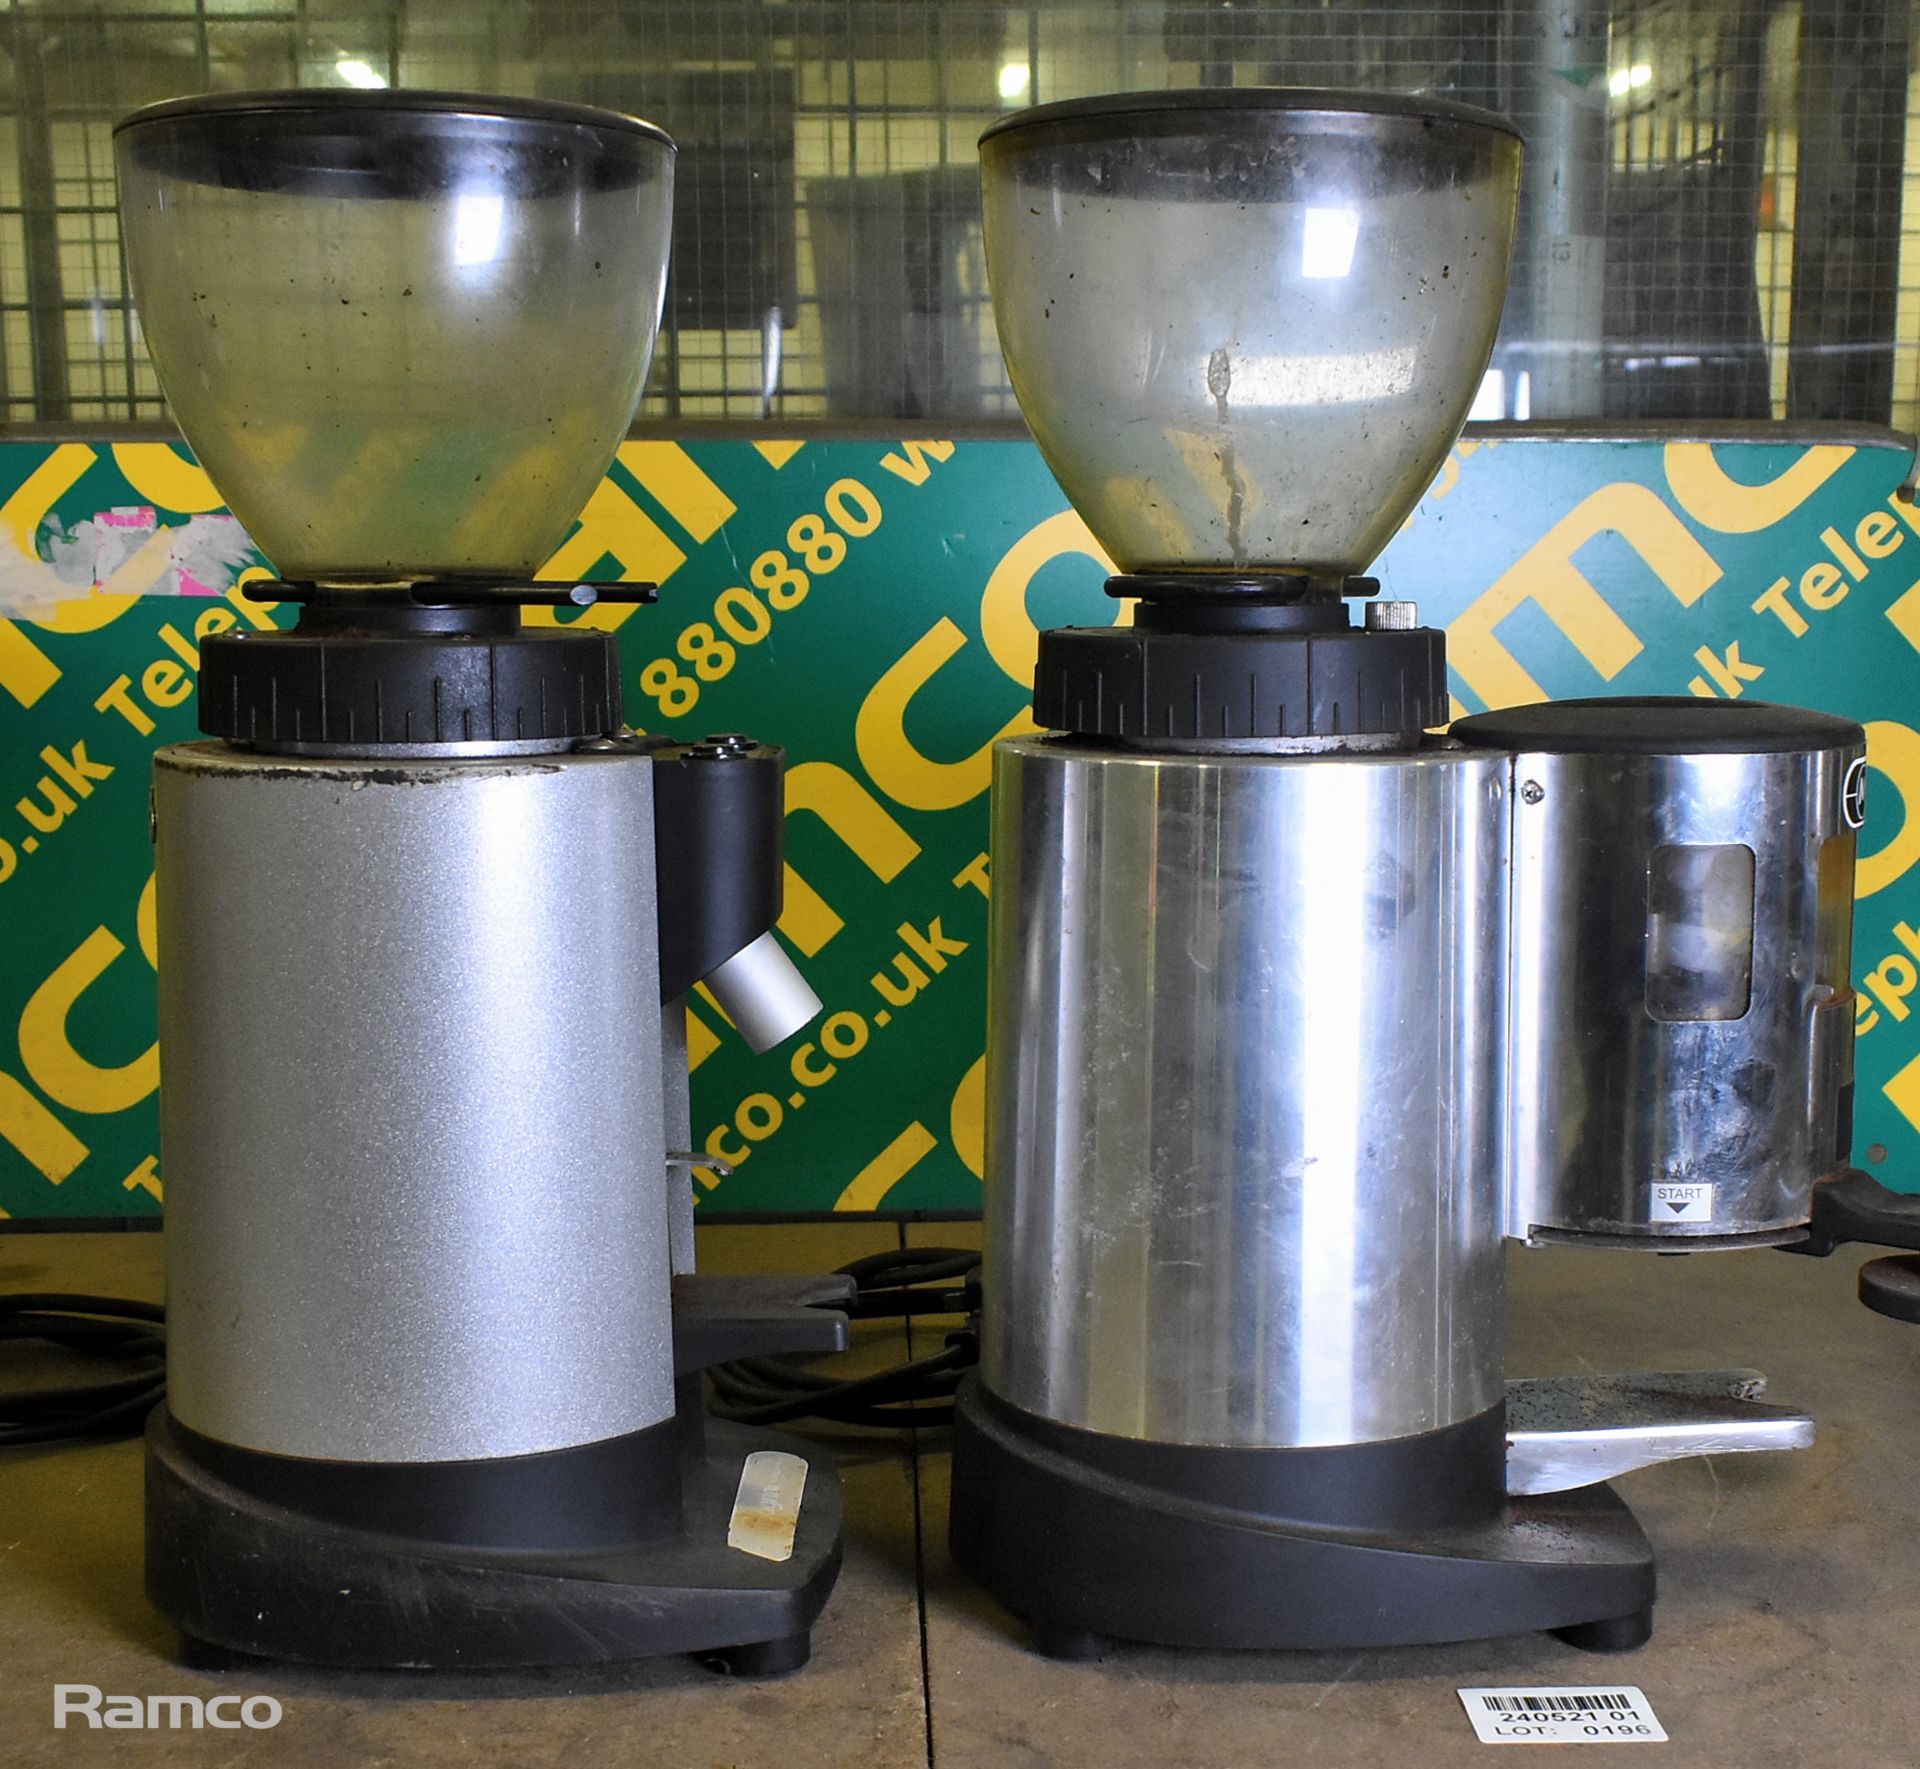 Ceado E6X espresso coffee grinder, Ceado E6P espresso coffee grinder - Image 4 of 6